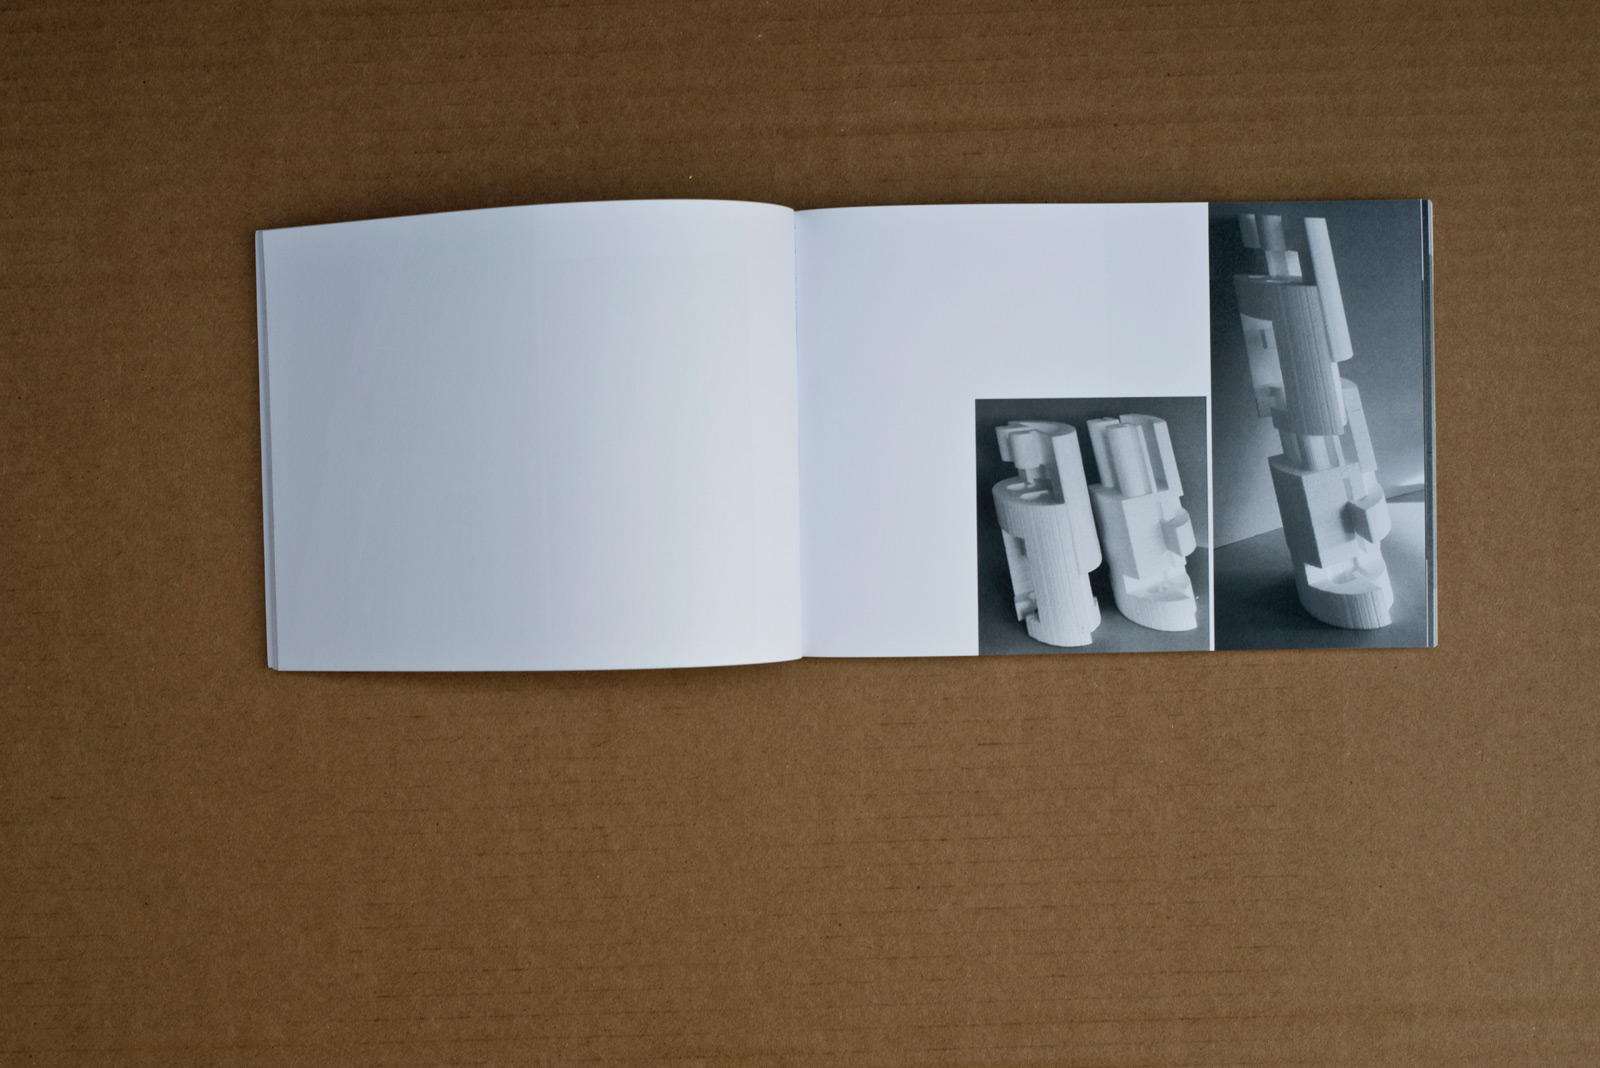 Helmut Gsöllpointner – Poritstudien Katalog © Martin Bruner Sombrero Design